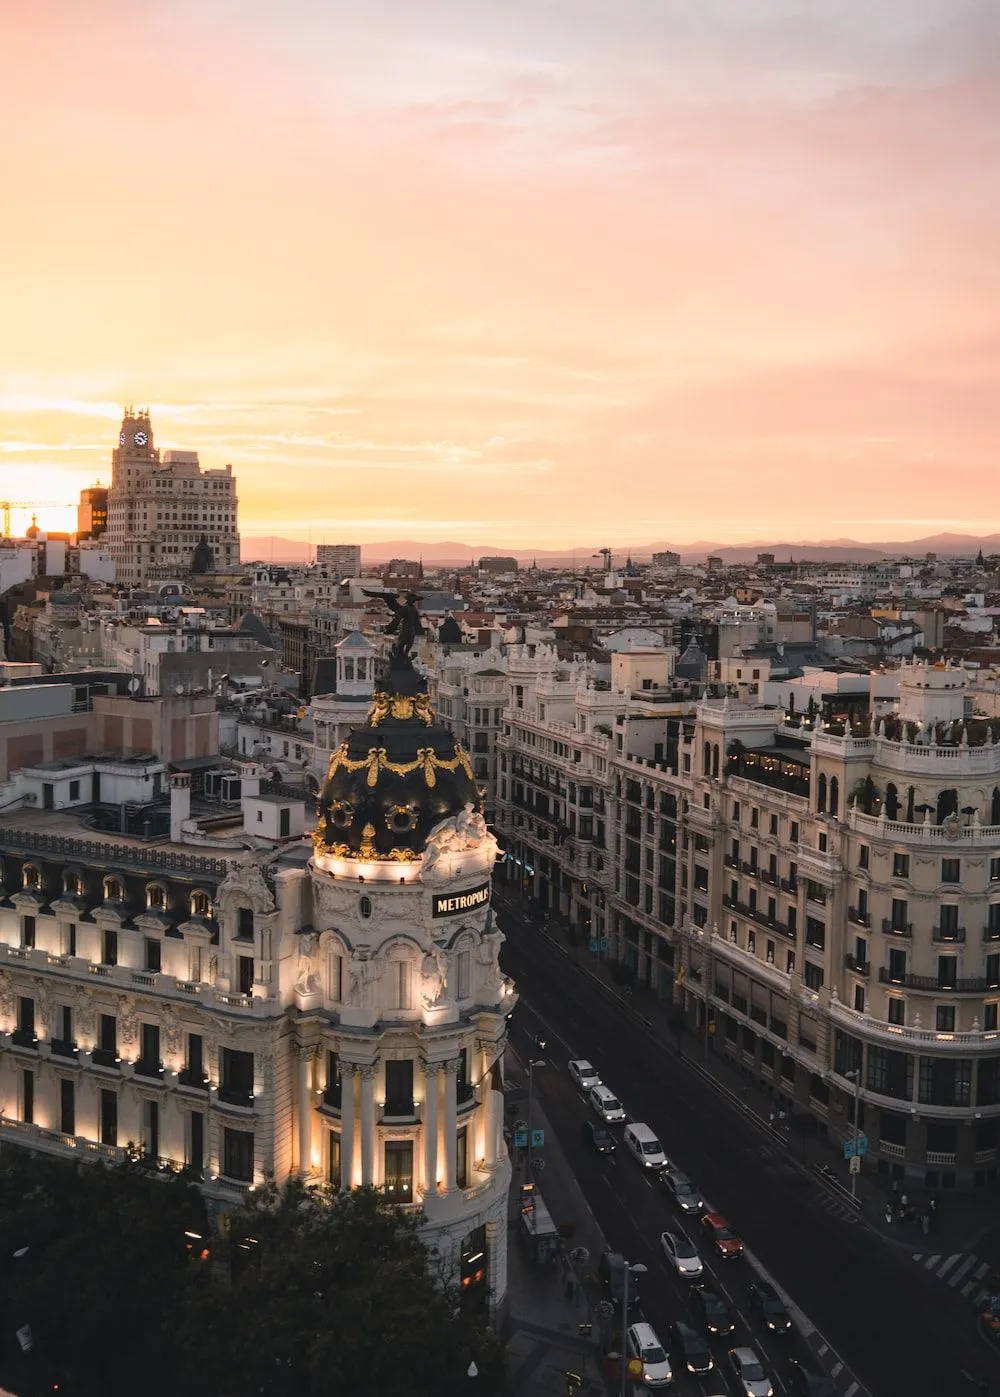 Imágenes de Madrid Skyline | Descarga imágenes gratuitas en Unsplash